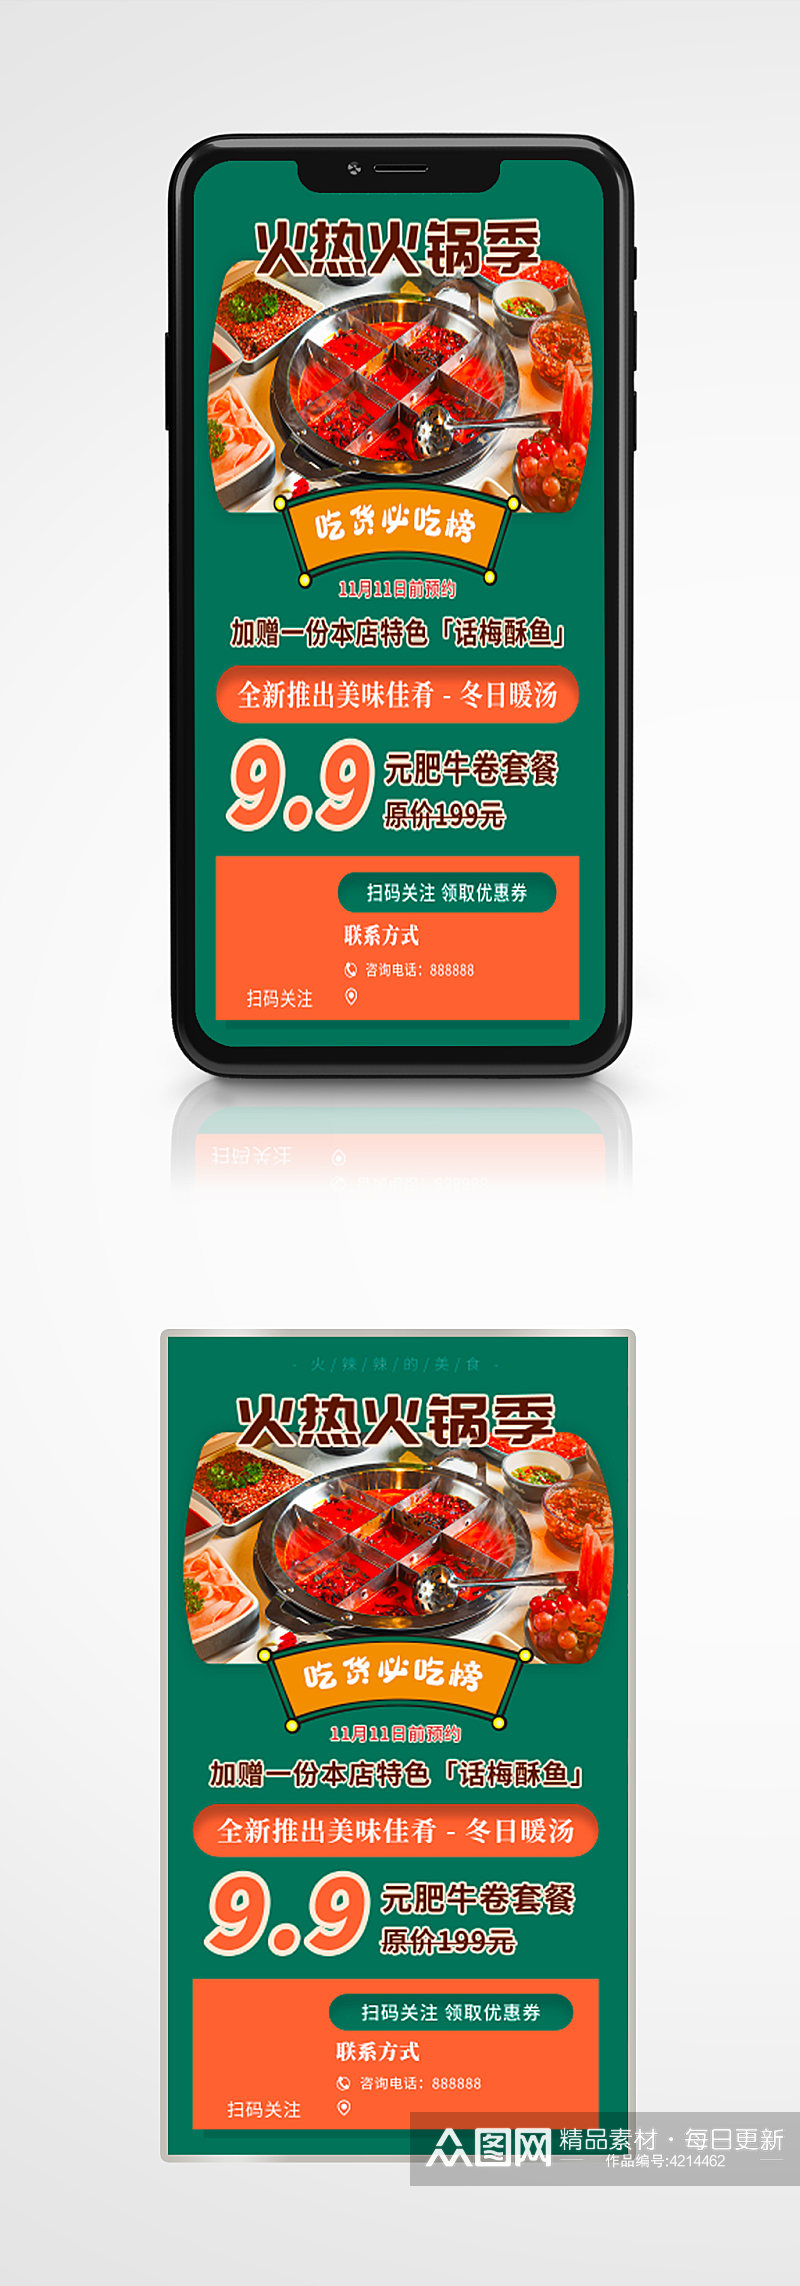 美食火锅烧烤自助餐手机海报国潮橙绿色素材